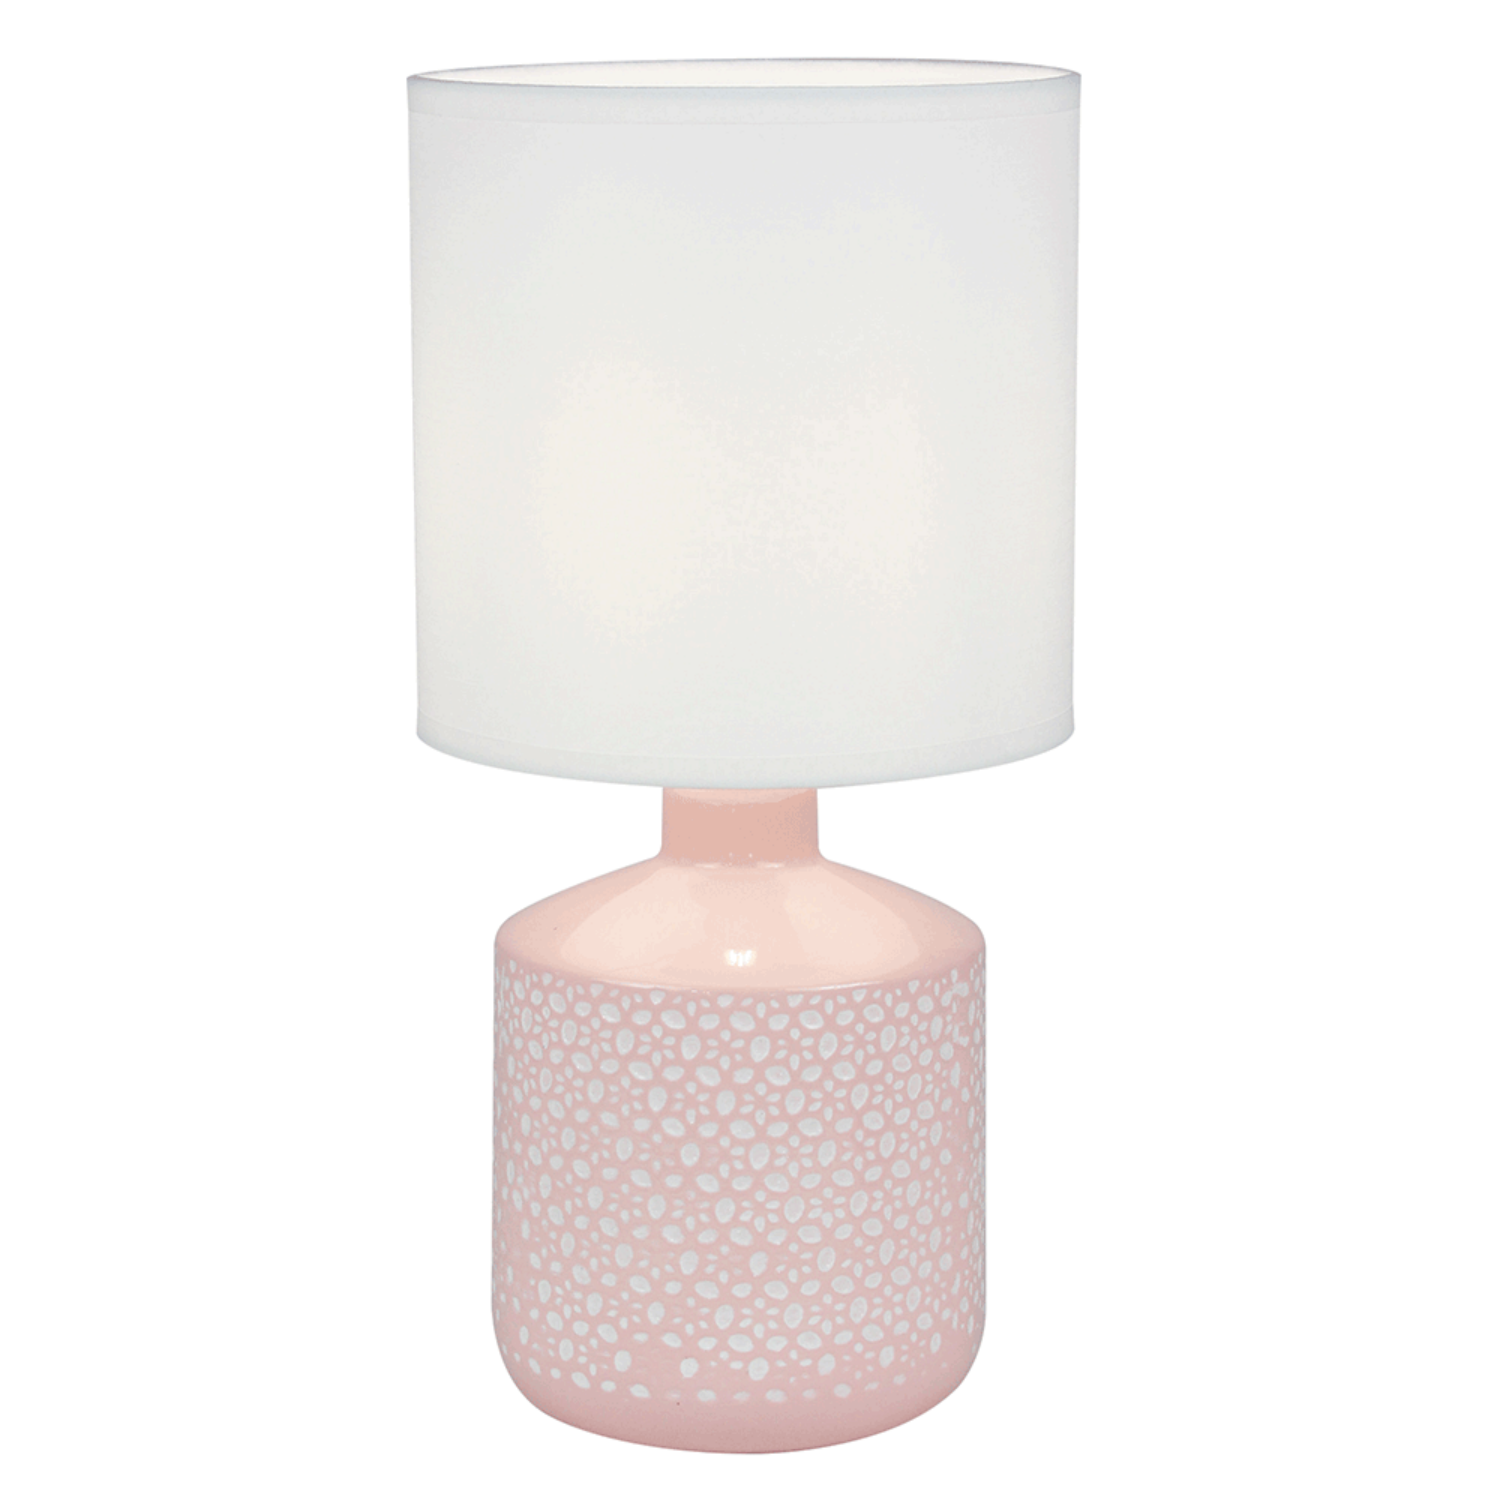 Asztali lámpa, fehér/rózsaszín, OFRED